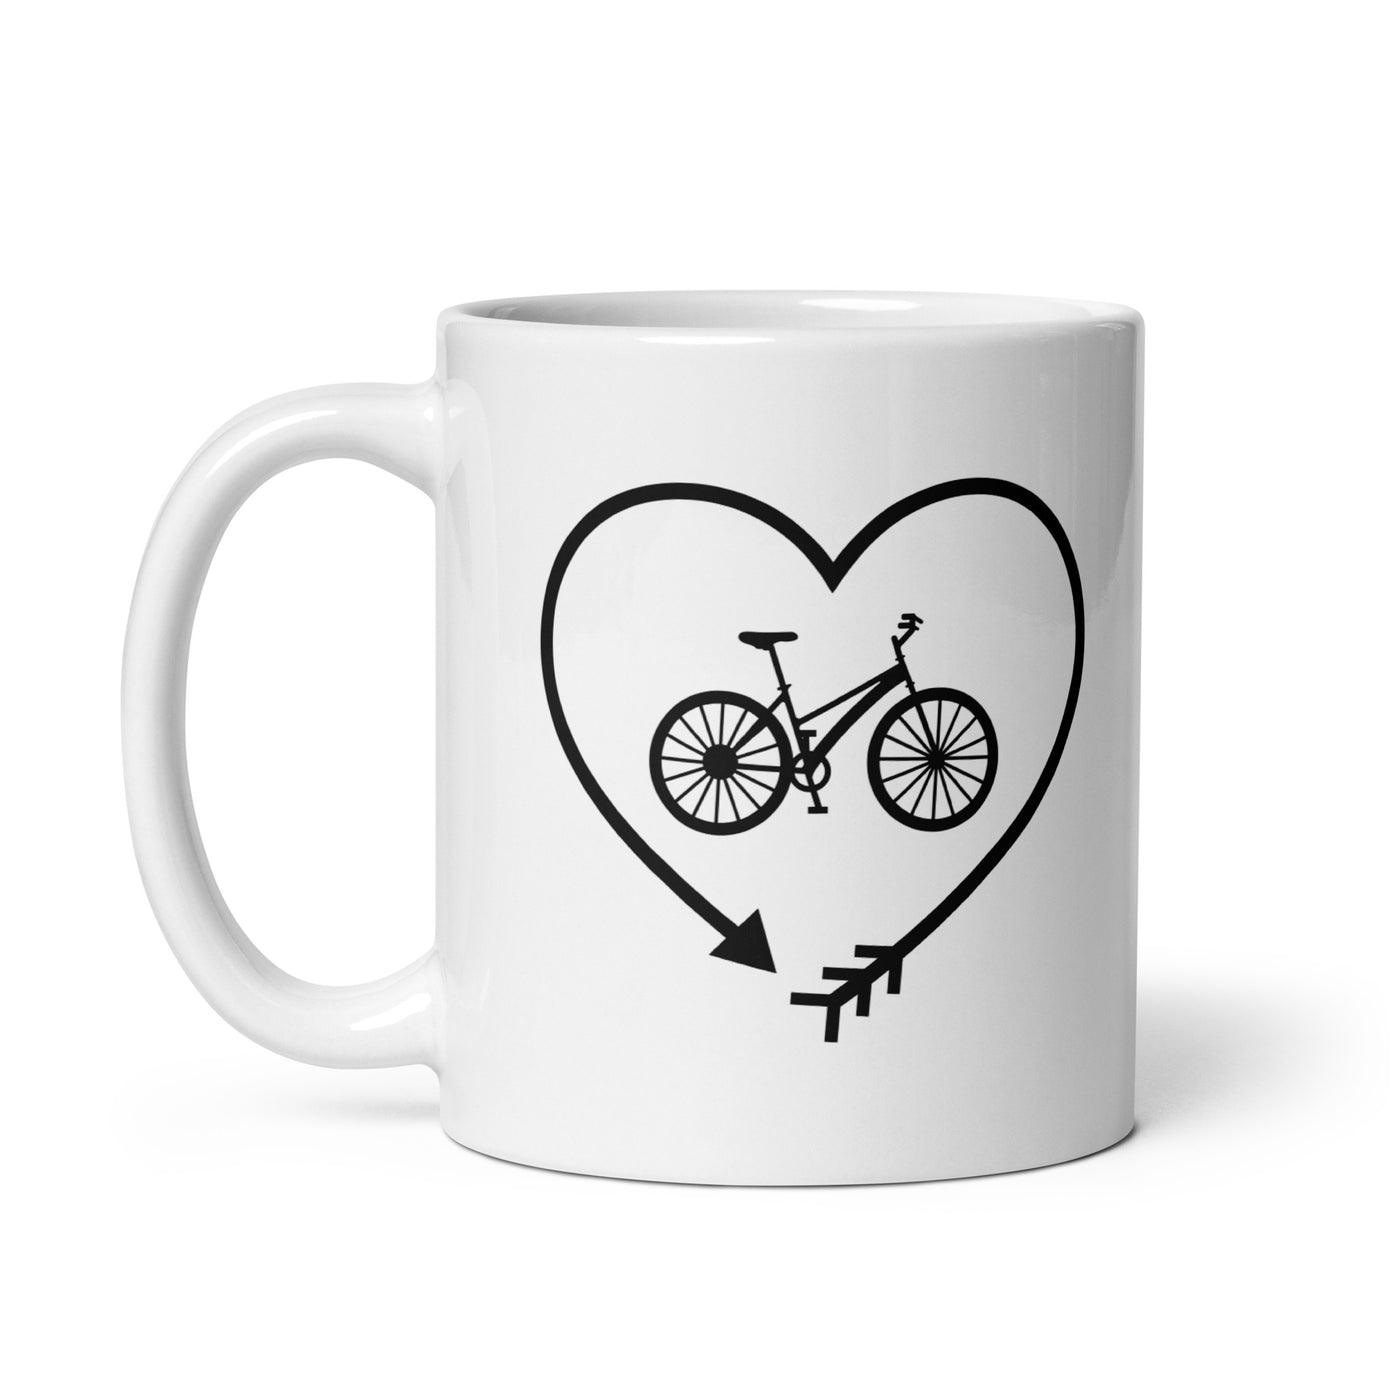 Arrow In Heartshape And Cycling - Tasse fahrrad 11oz